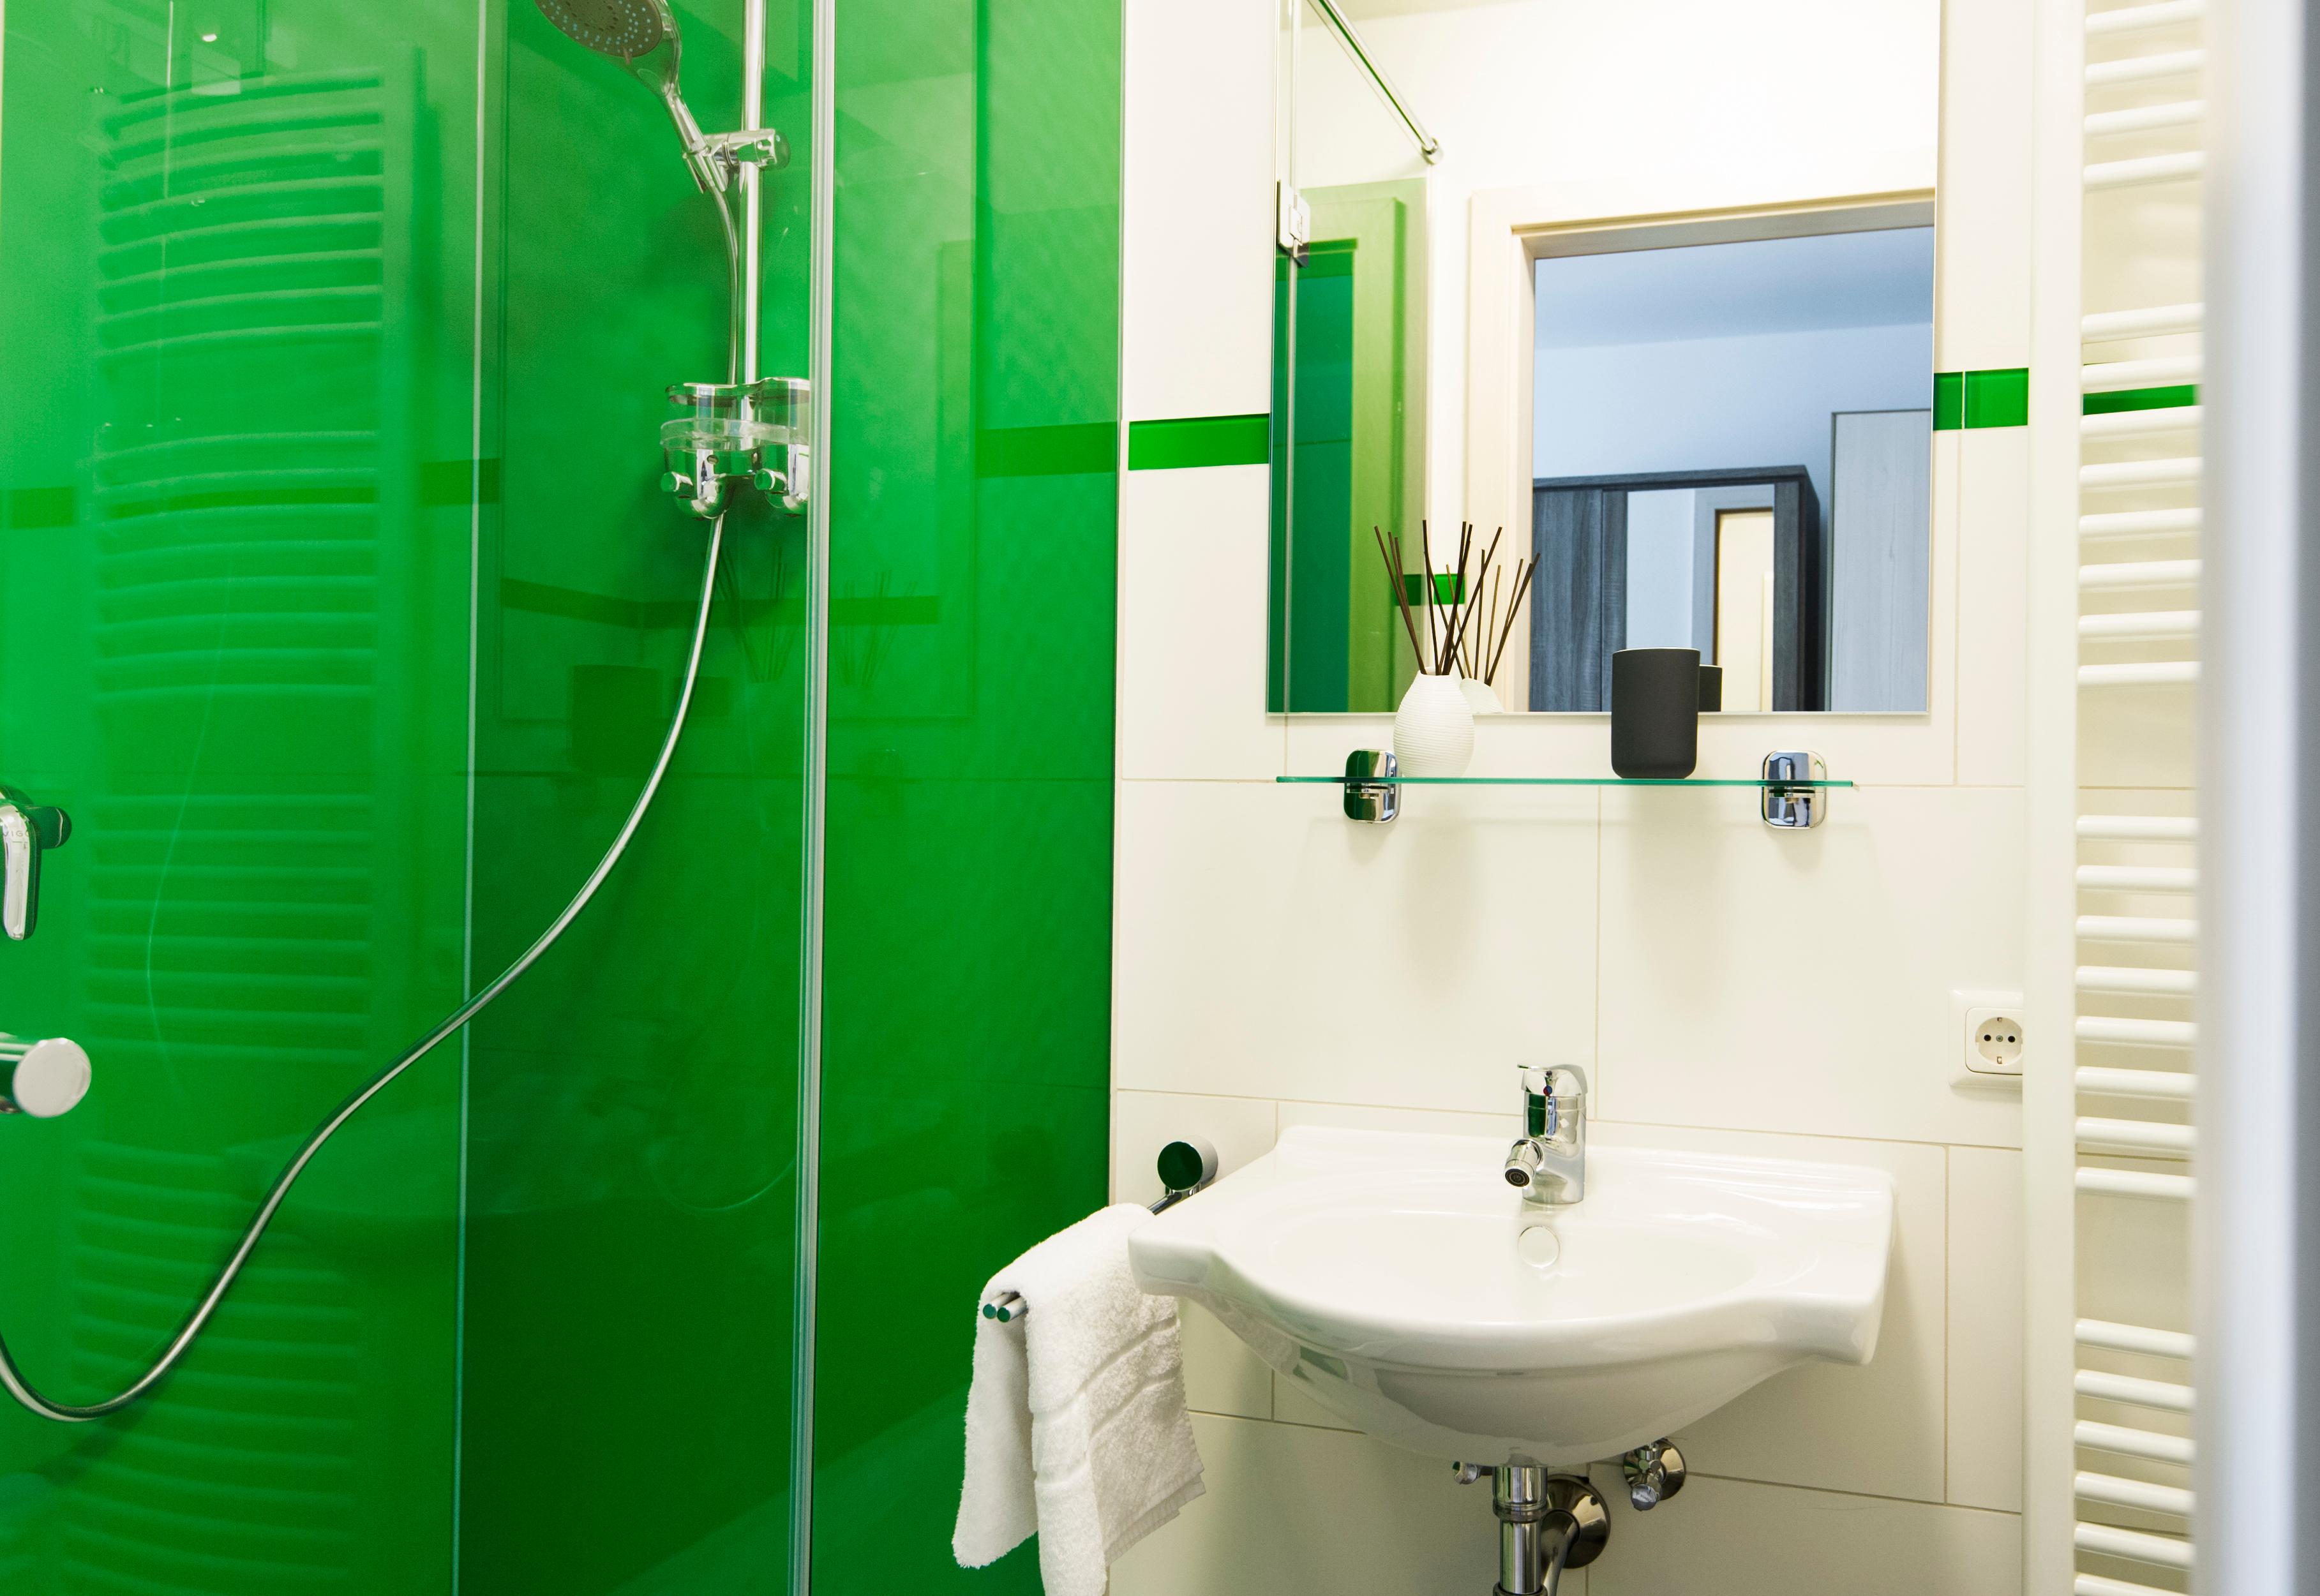 Glas Dusche rückseitig grün lackiert als Duschrückwand #badezimmer #laminat #duschrückwand ©Layerprint.de